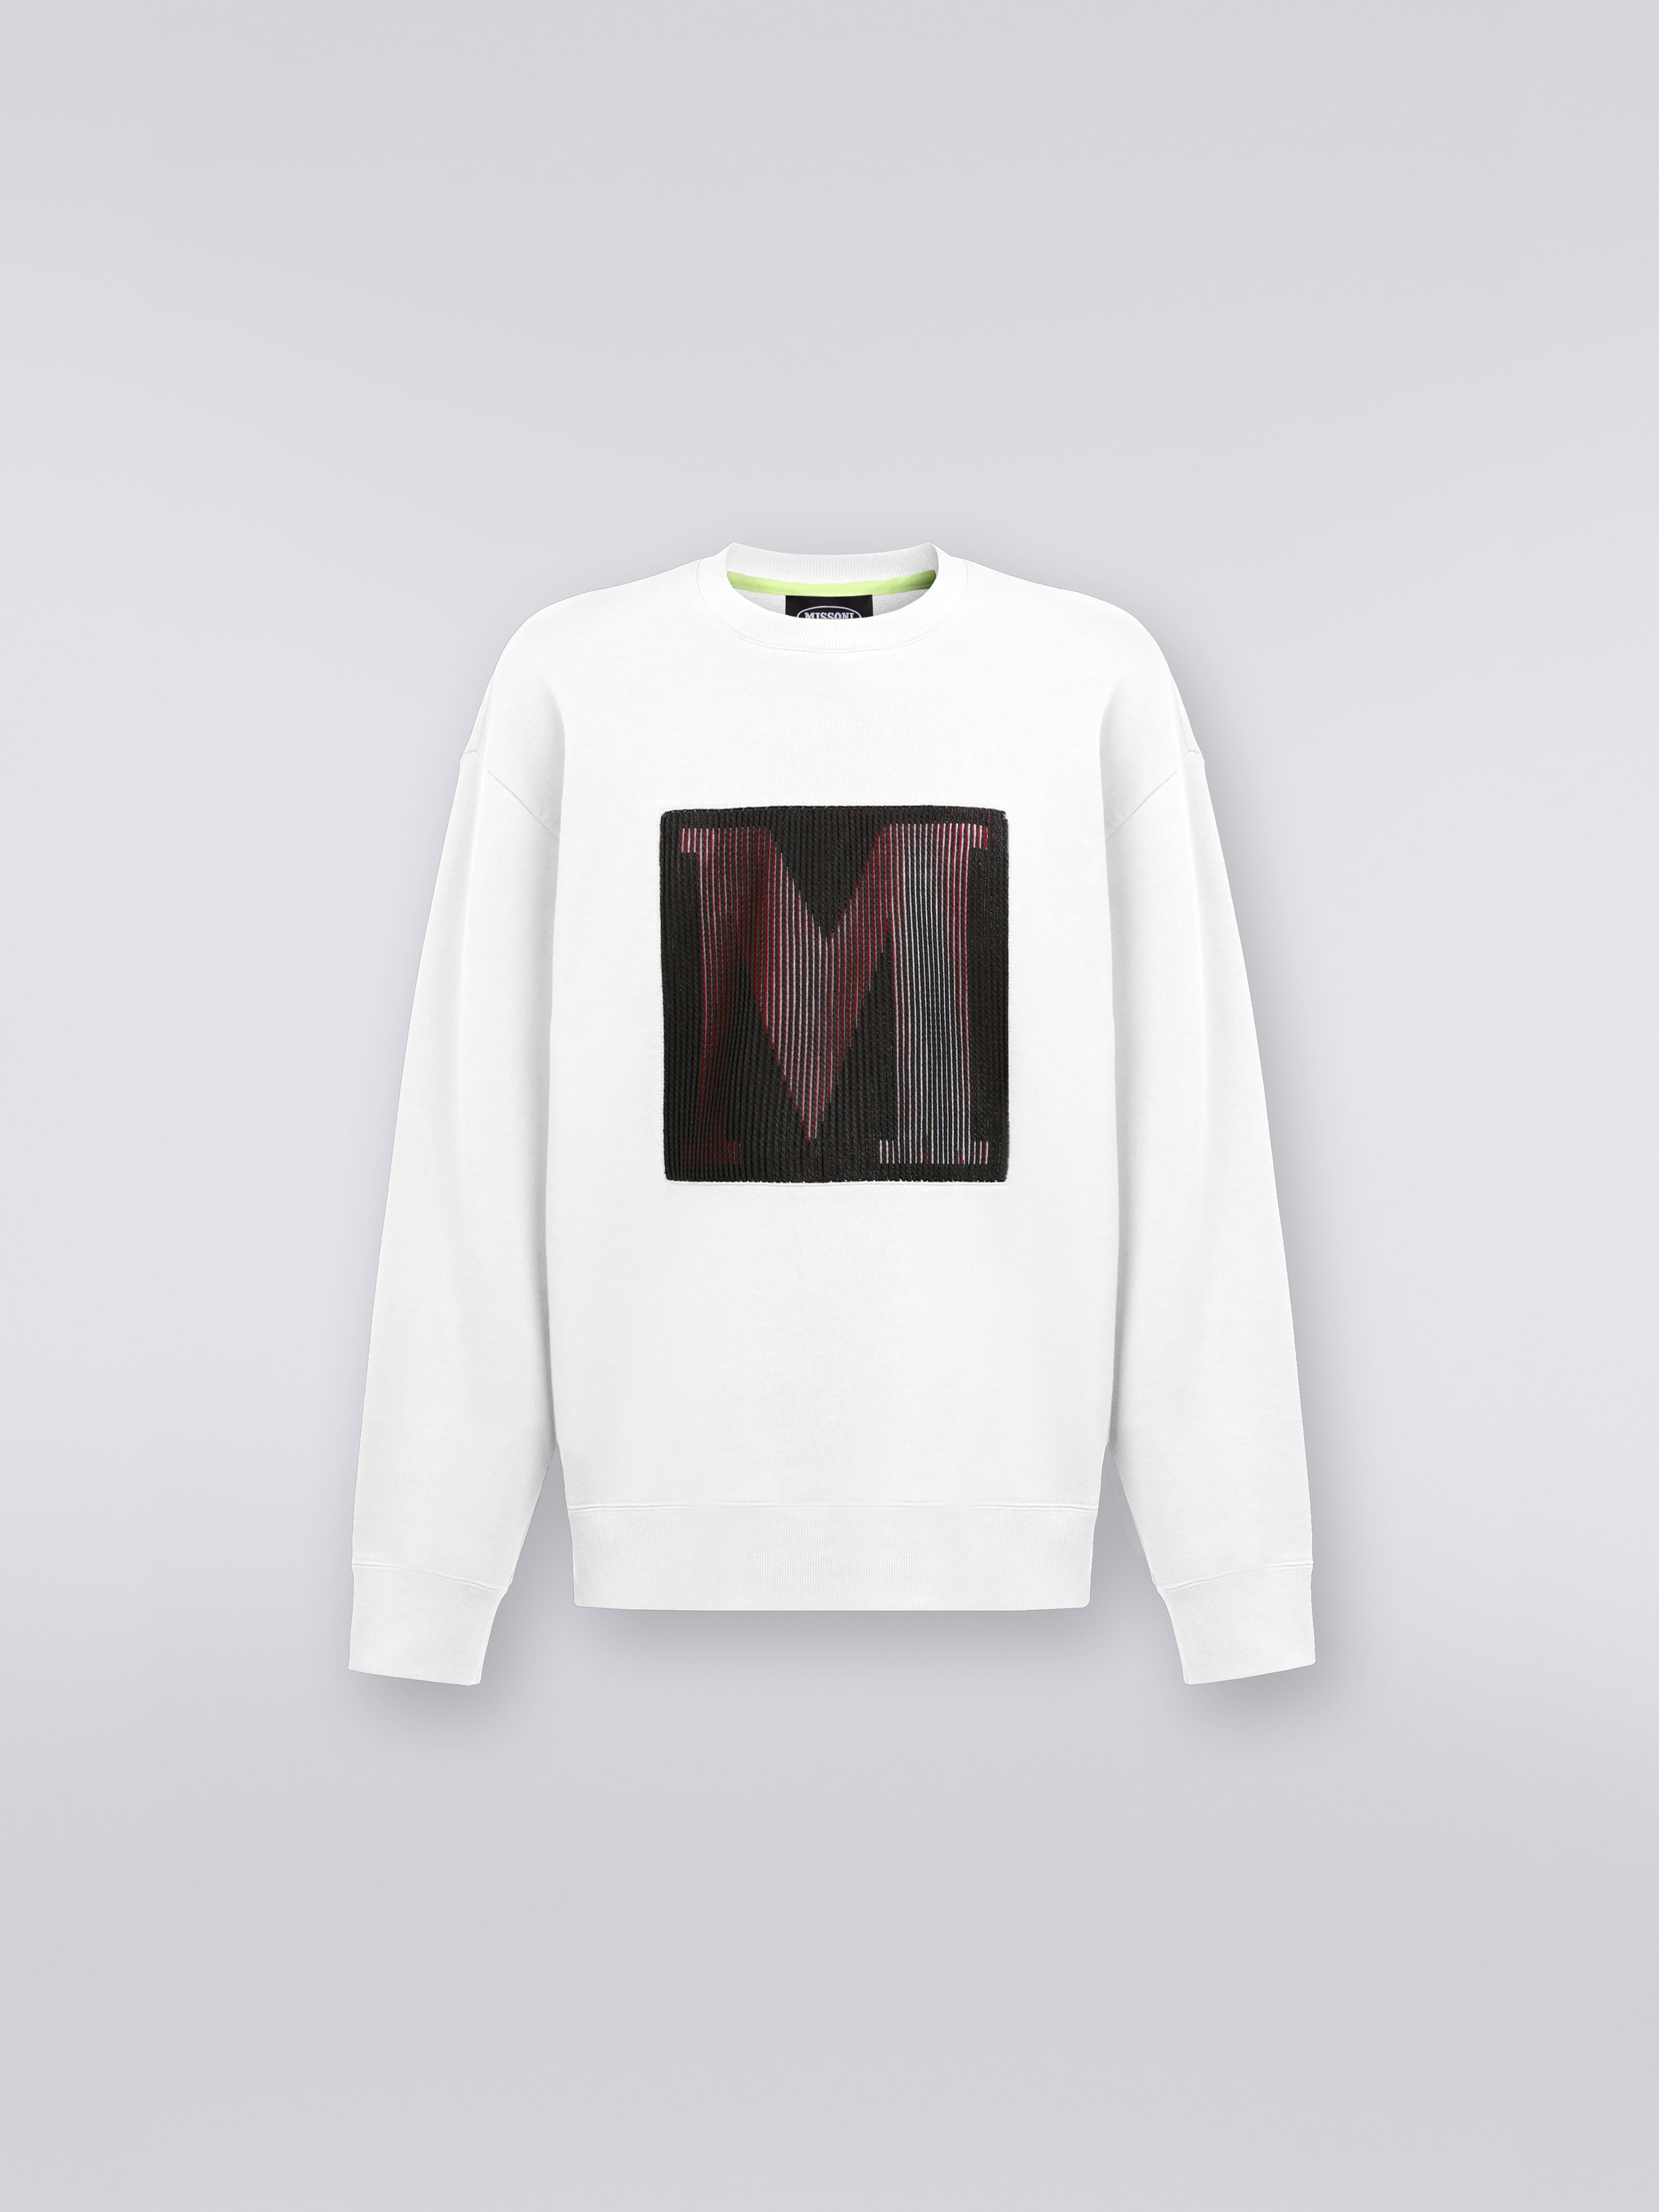 マイク・メニャンとのコラボレーションによるスウェットシャツ ラウンドネック コットン マクロロゴ入り, ホワイト - 0